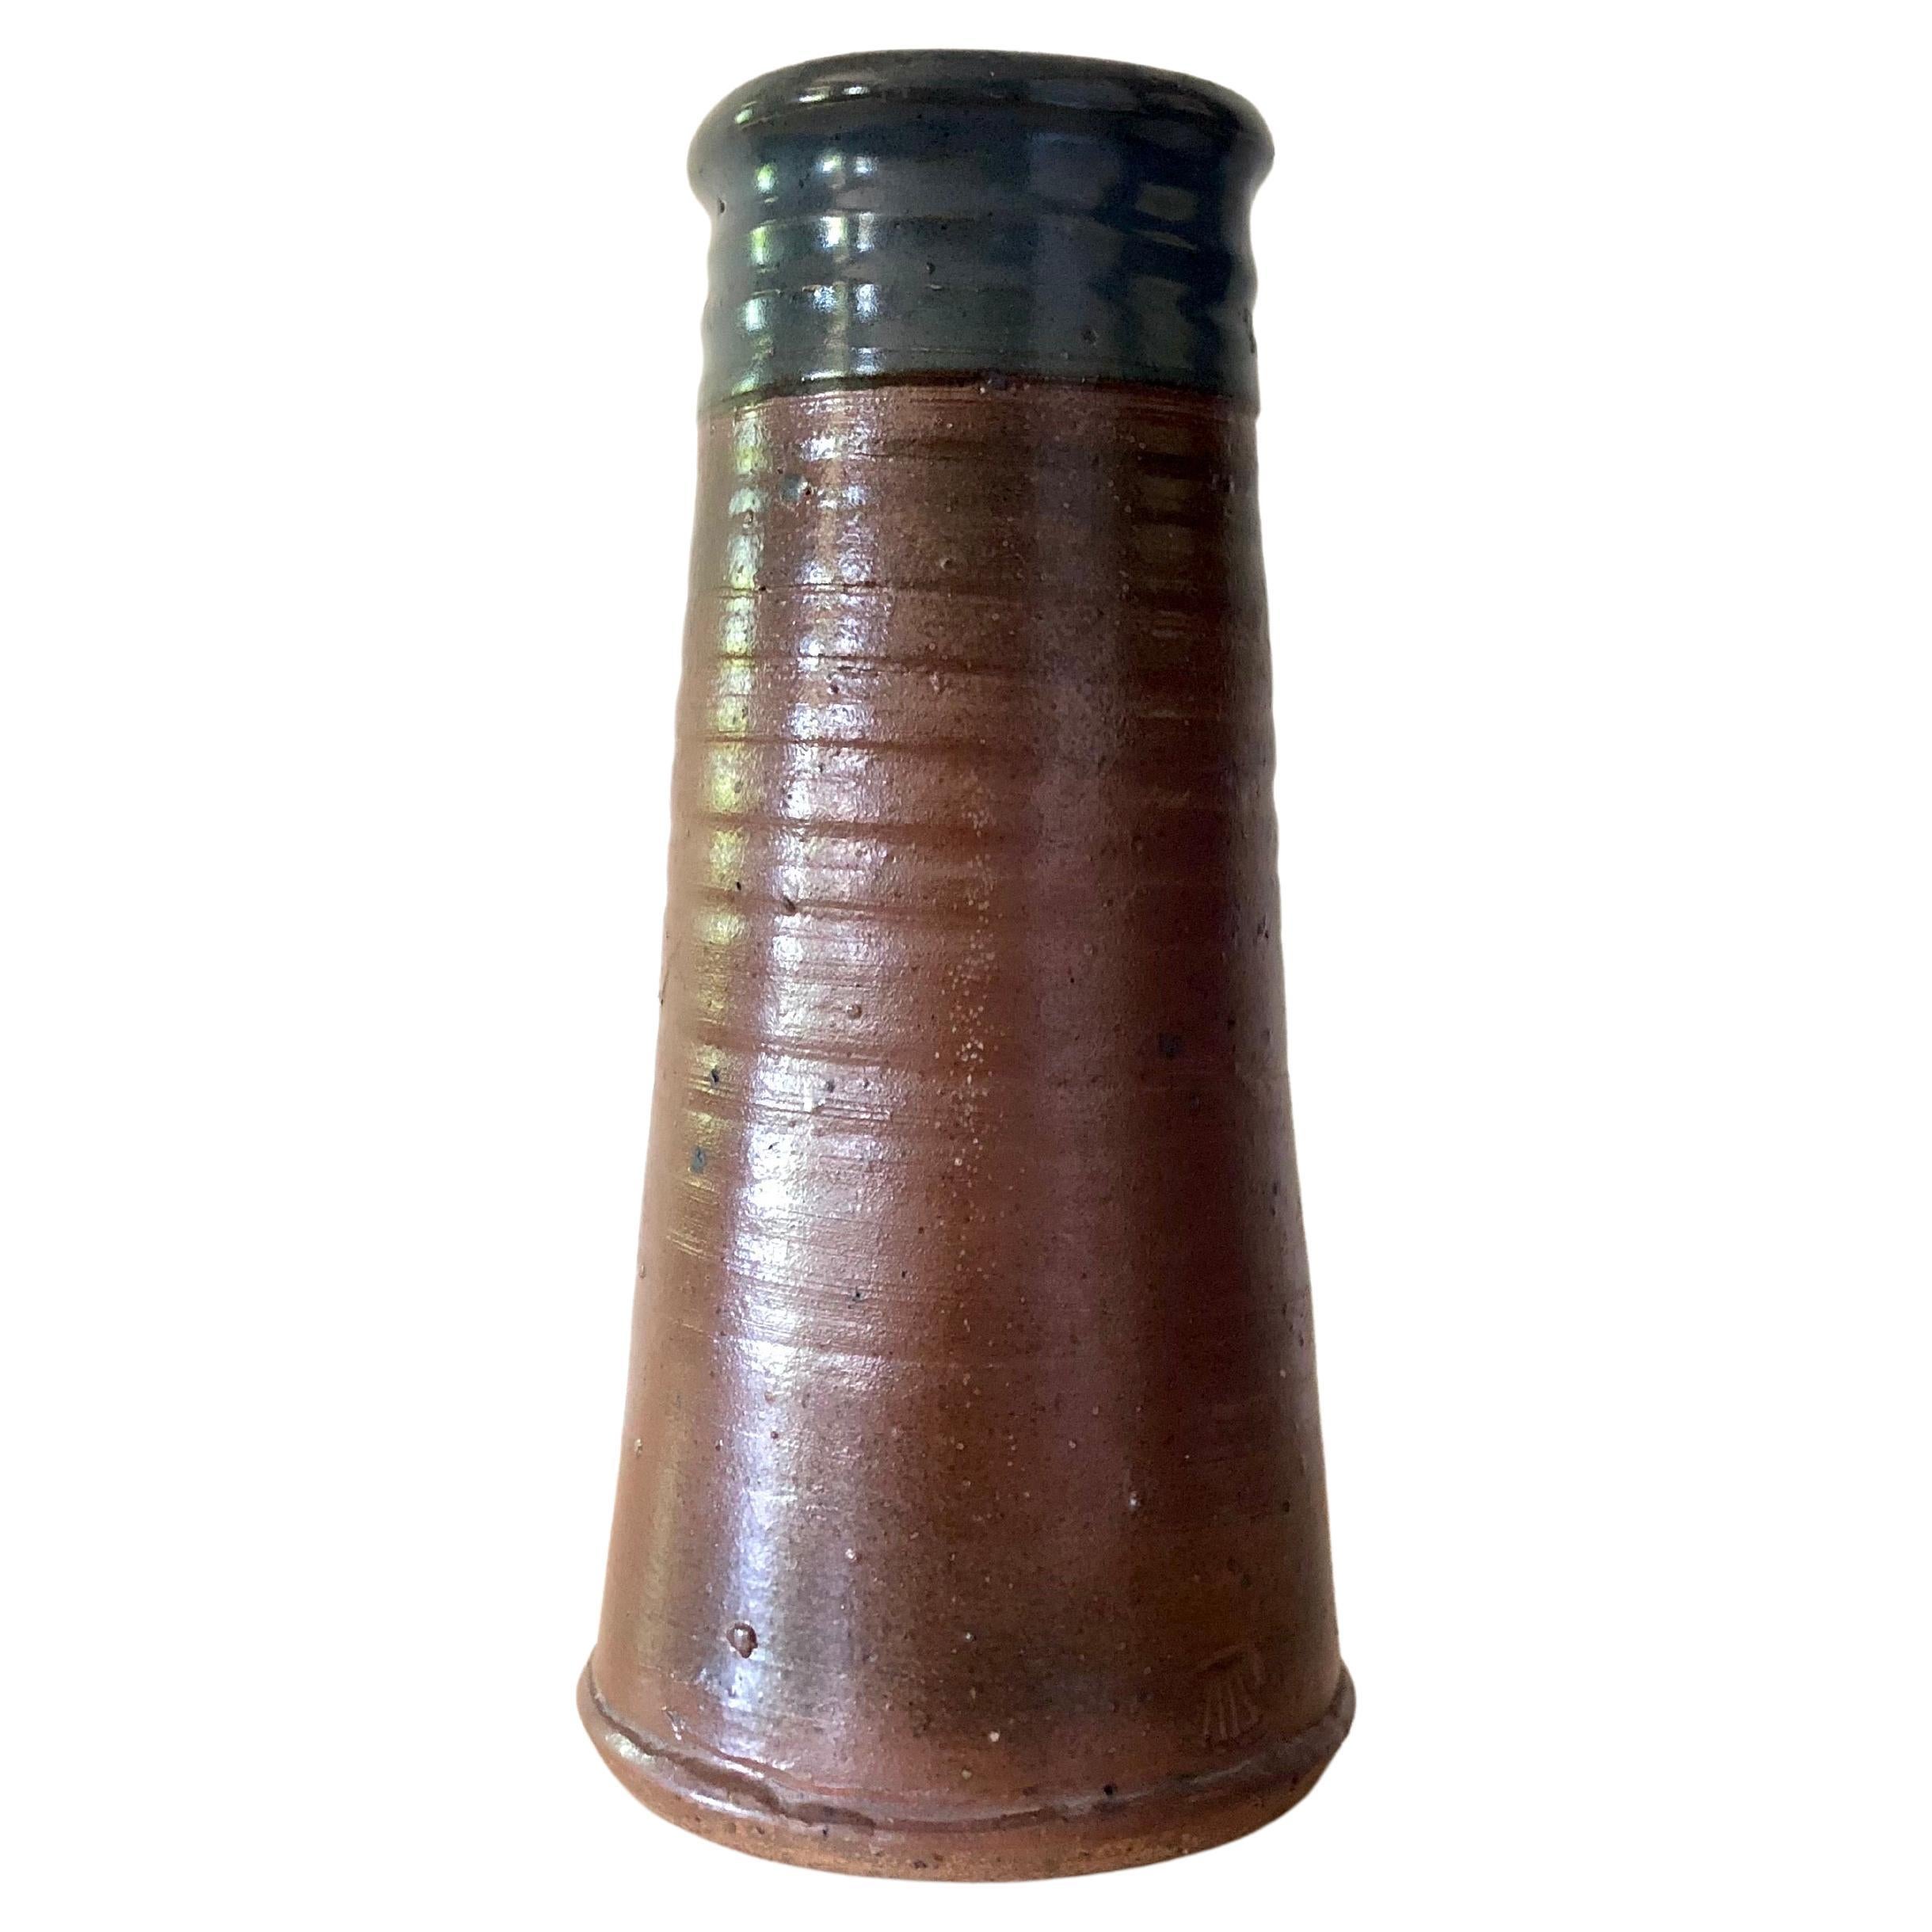 Pierre Digan, La Borne French Ceramic Vase, circa 1970